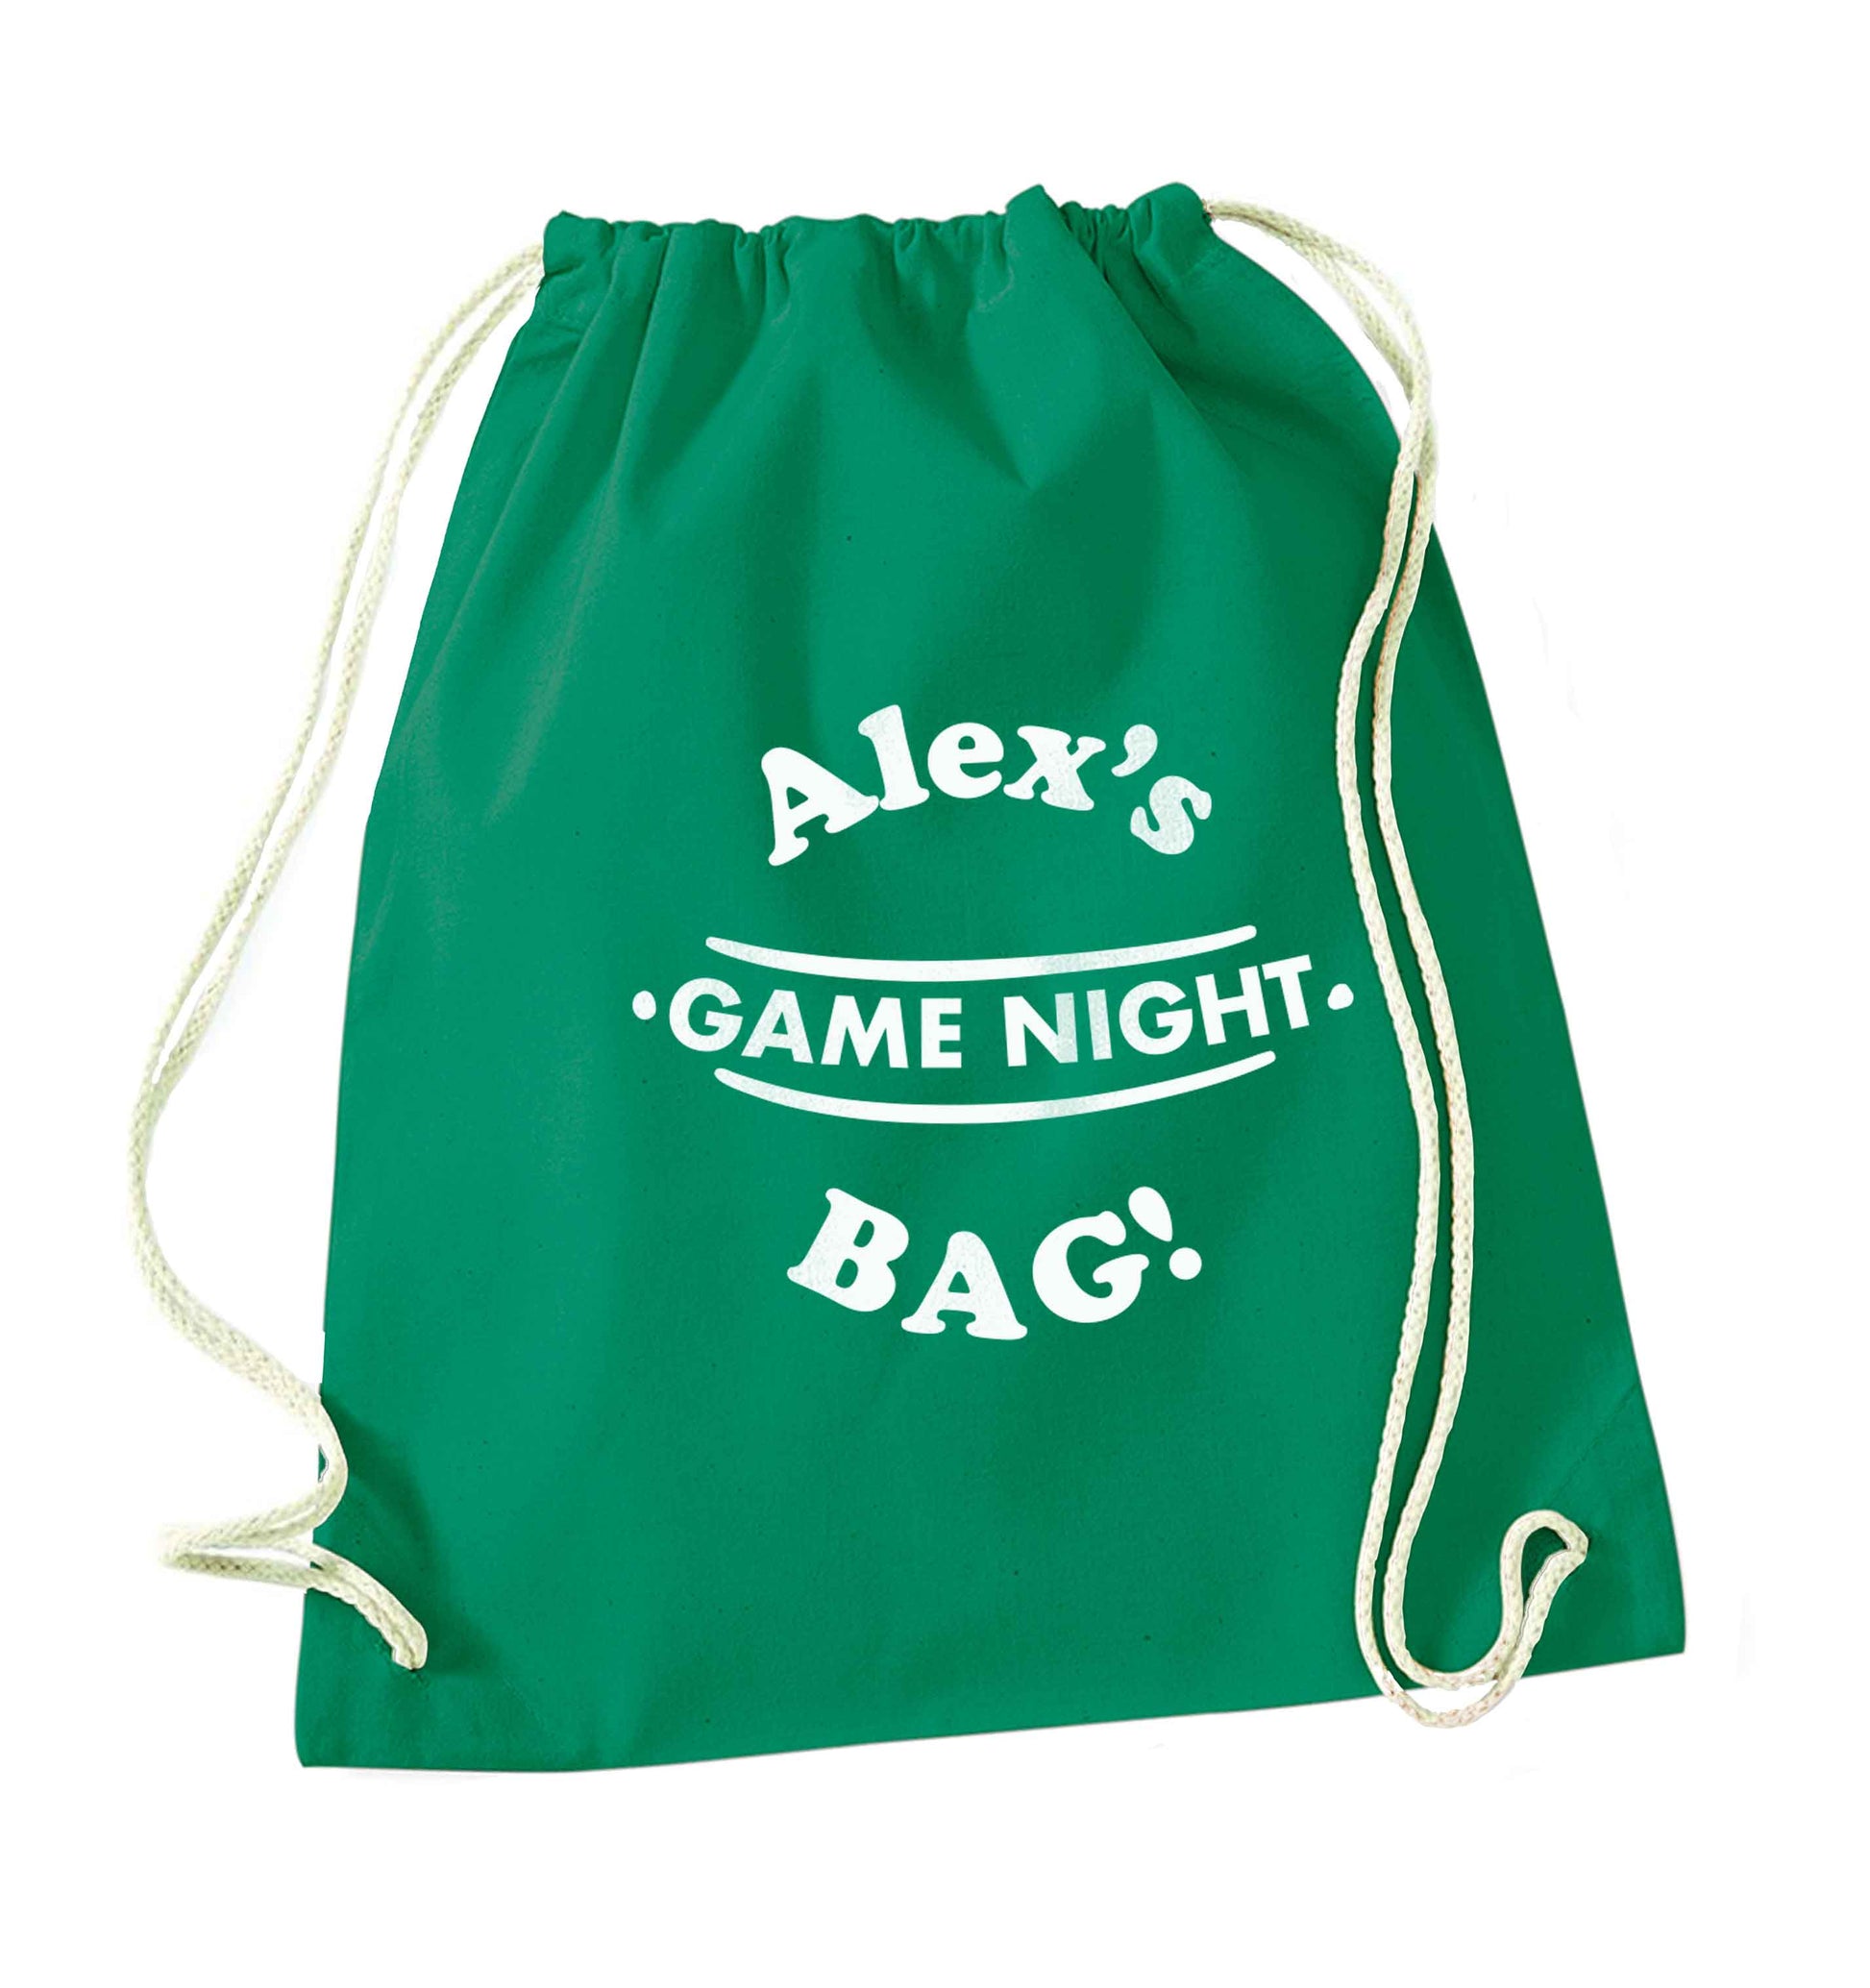 Personalised game night bag green drawstring bag